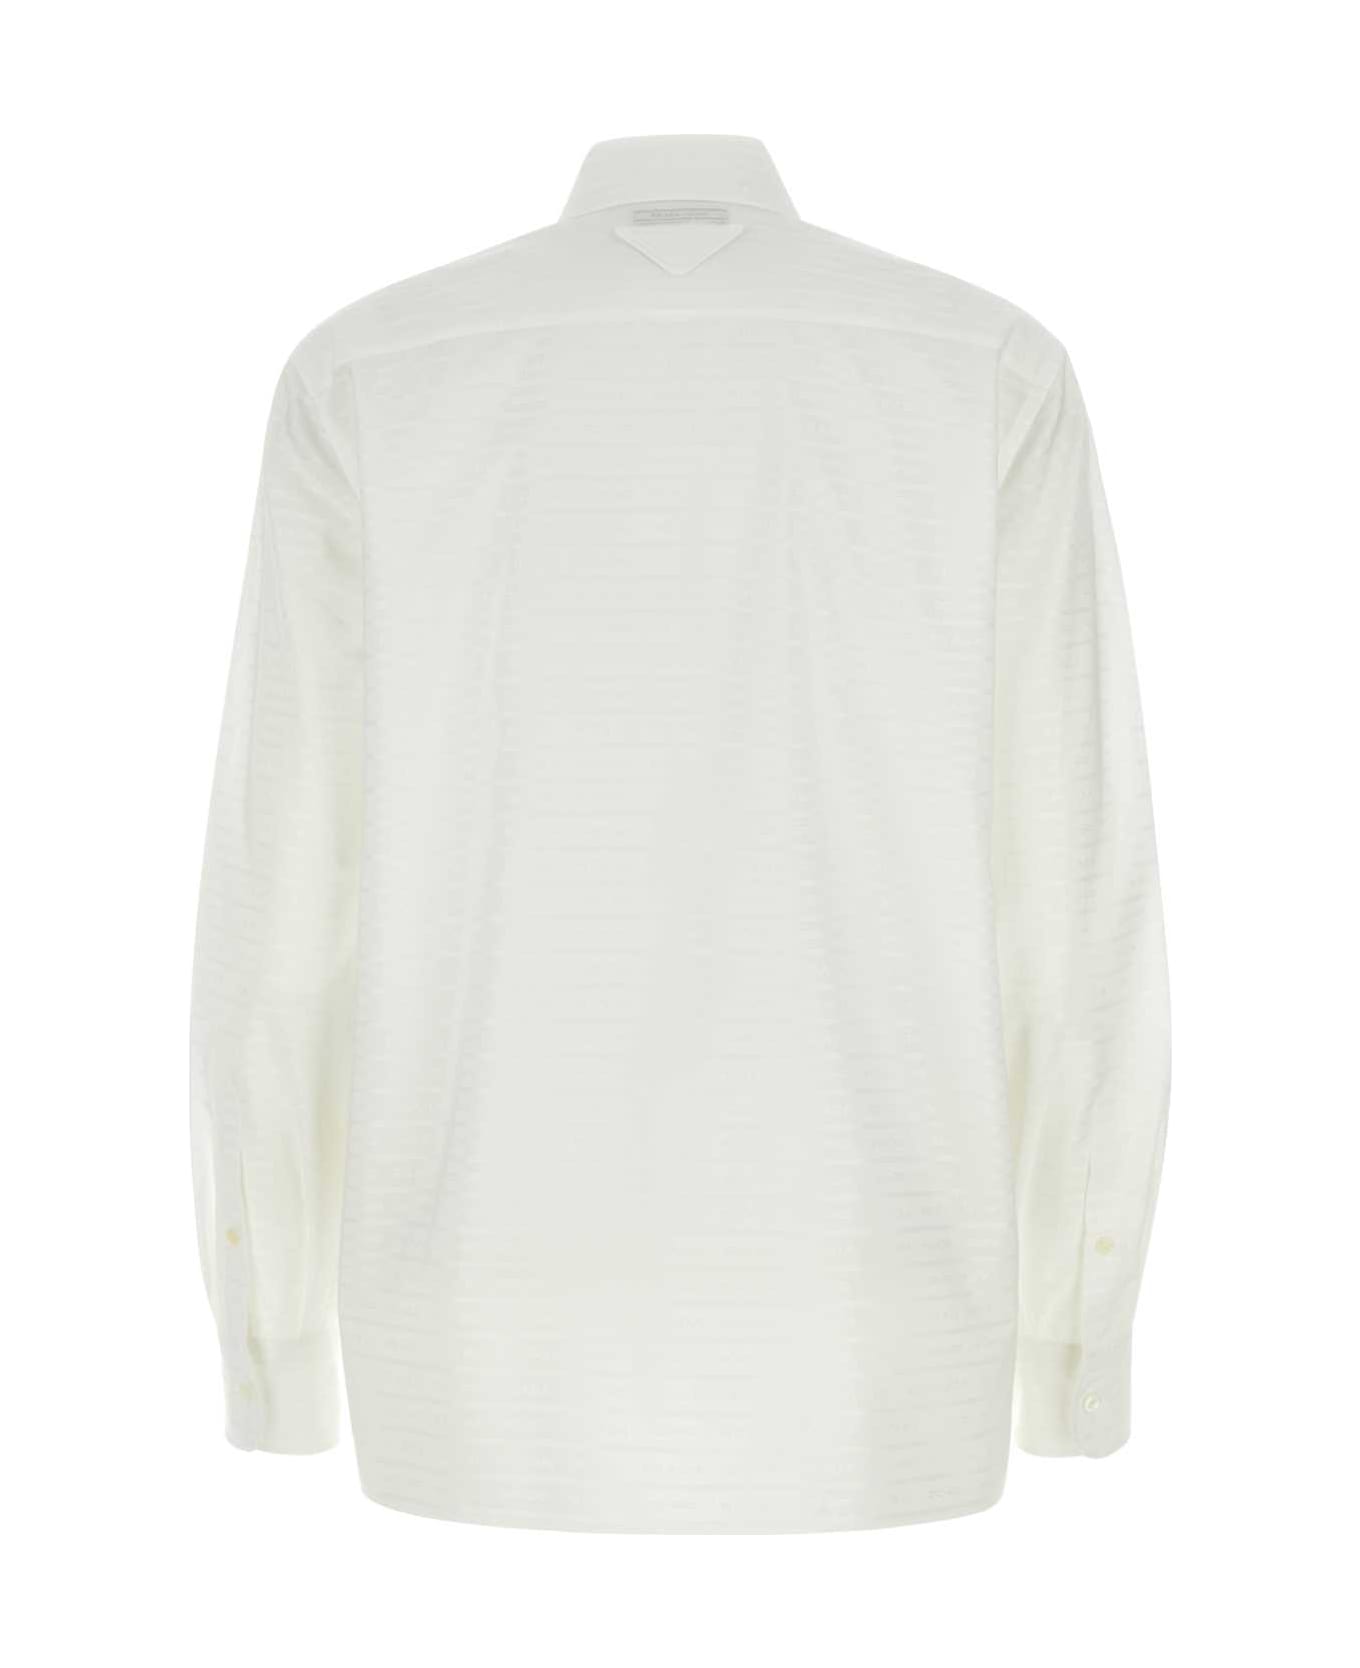 Prada White Cotton Shirt - BIANCO